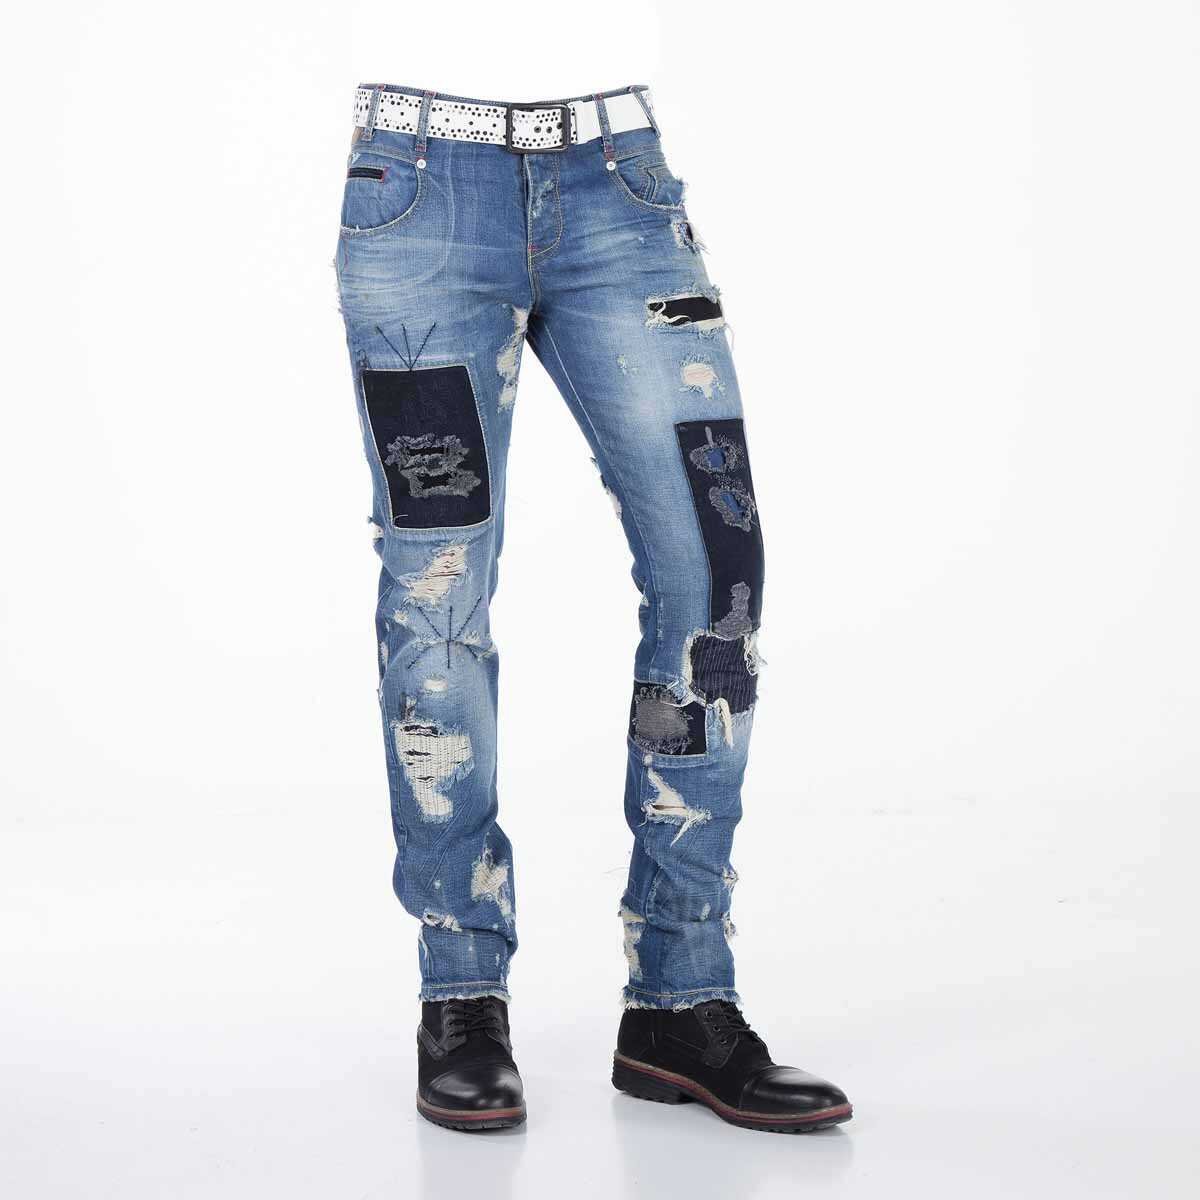 CD347 Herren bequeme Jeans im stylischen Destroyed-Look - Cipo and Baxx - Herren Jeans - Letzte Chance! -